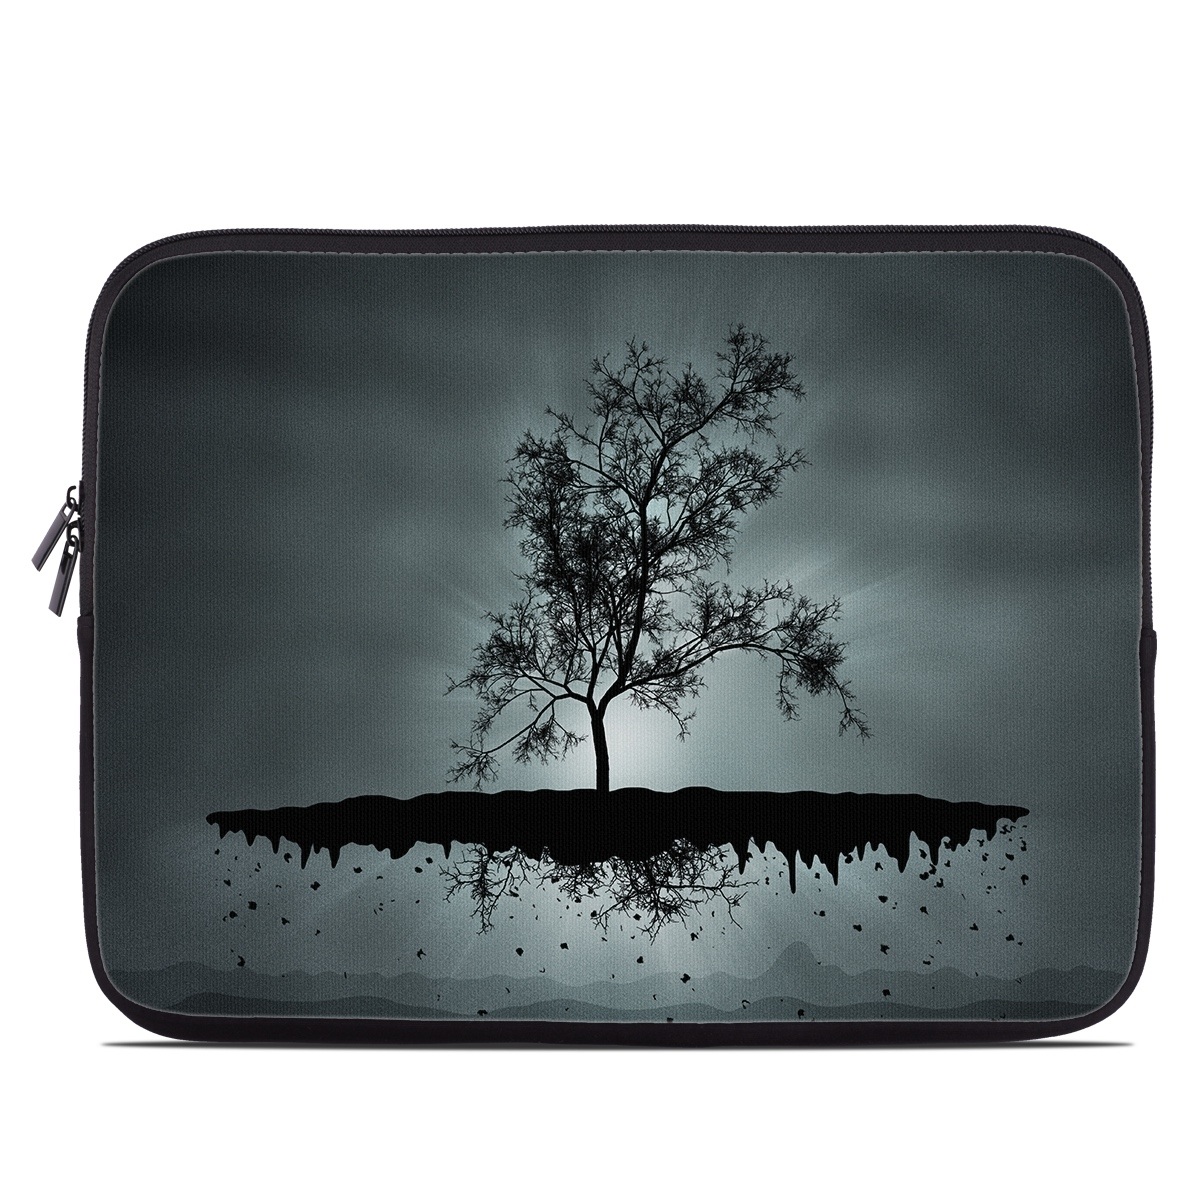 Laptop Sleeve - Flying Tree Black (Image 1)